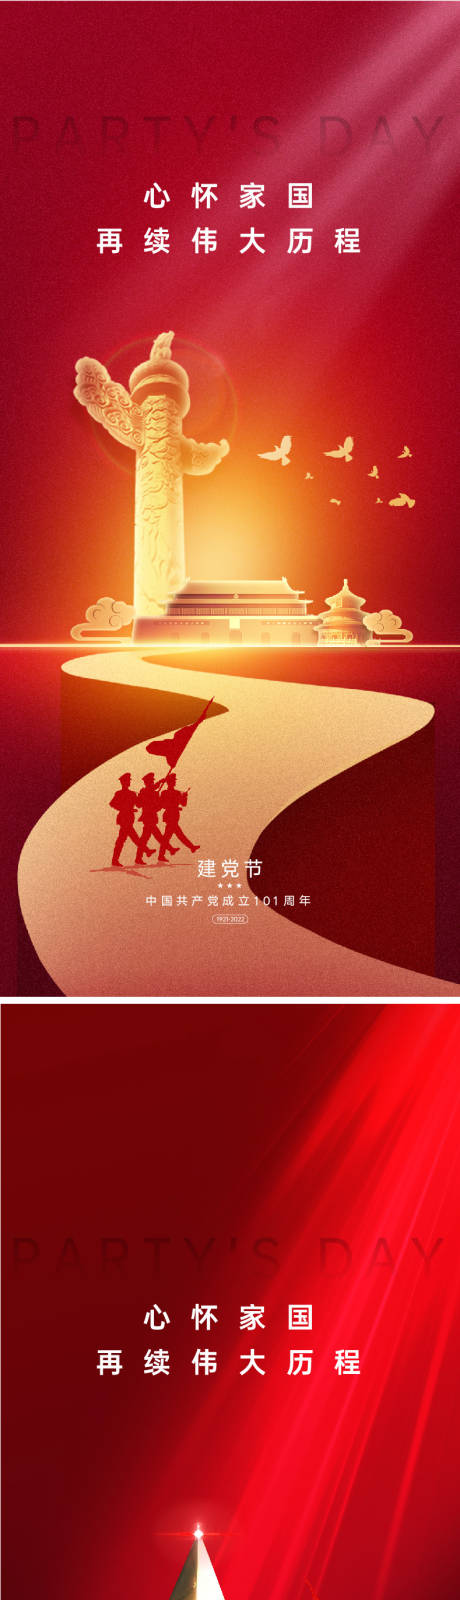 建党节101周年海报